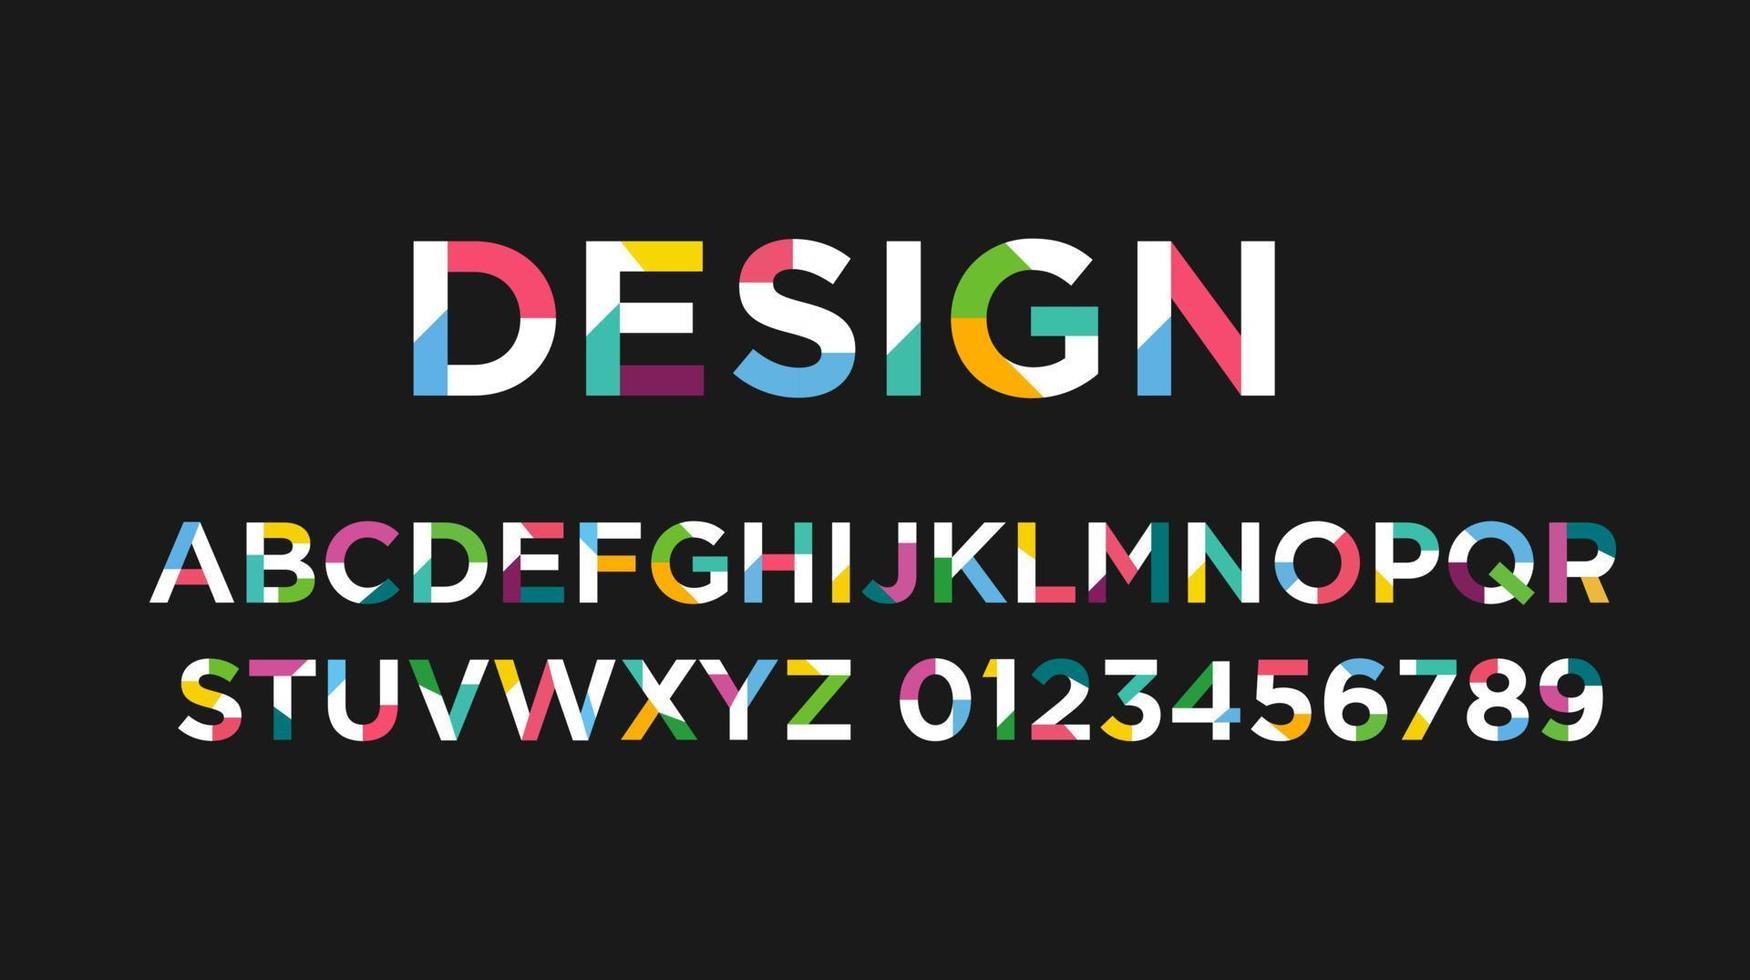 colofrul vector van moderne abstracte lettertype en alfabet vectorillustratie